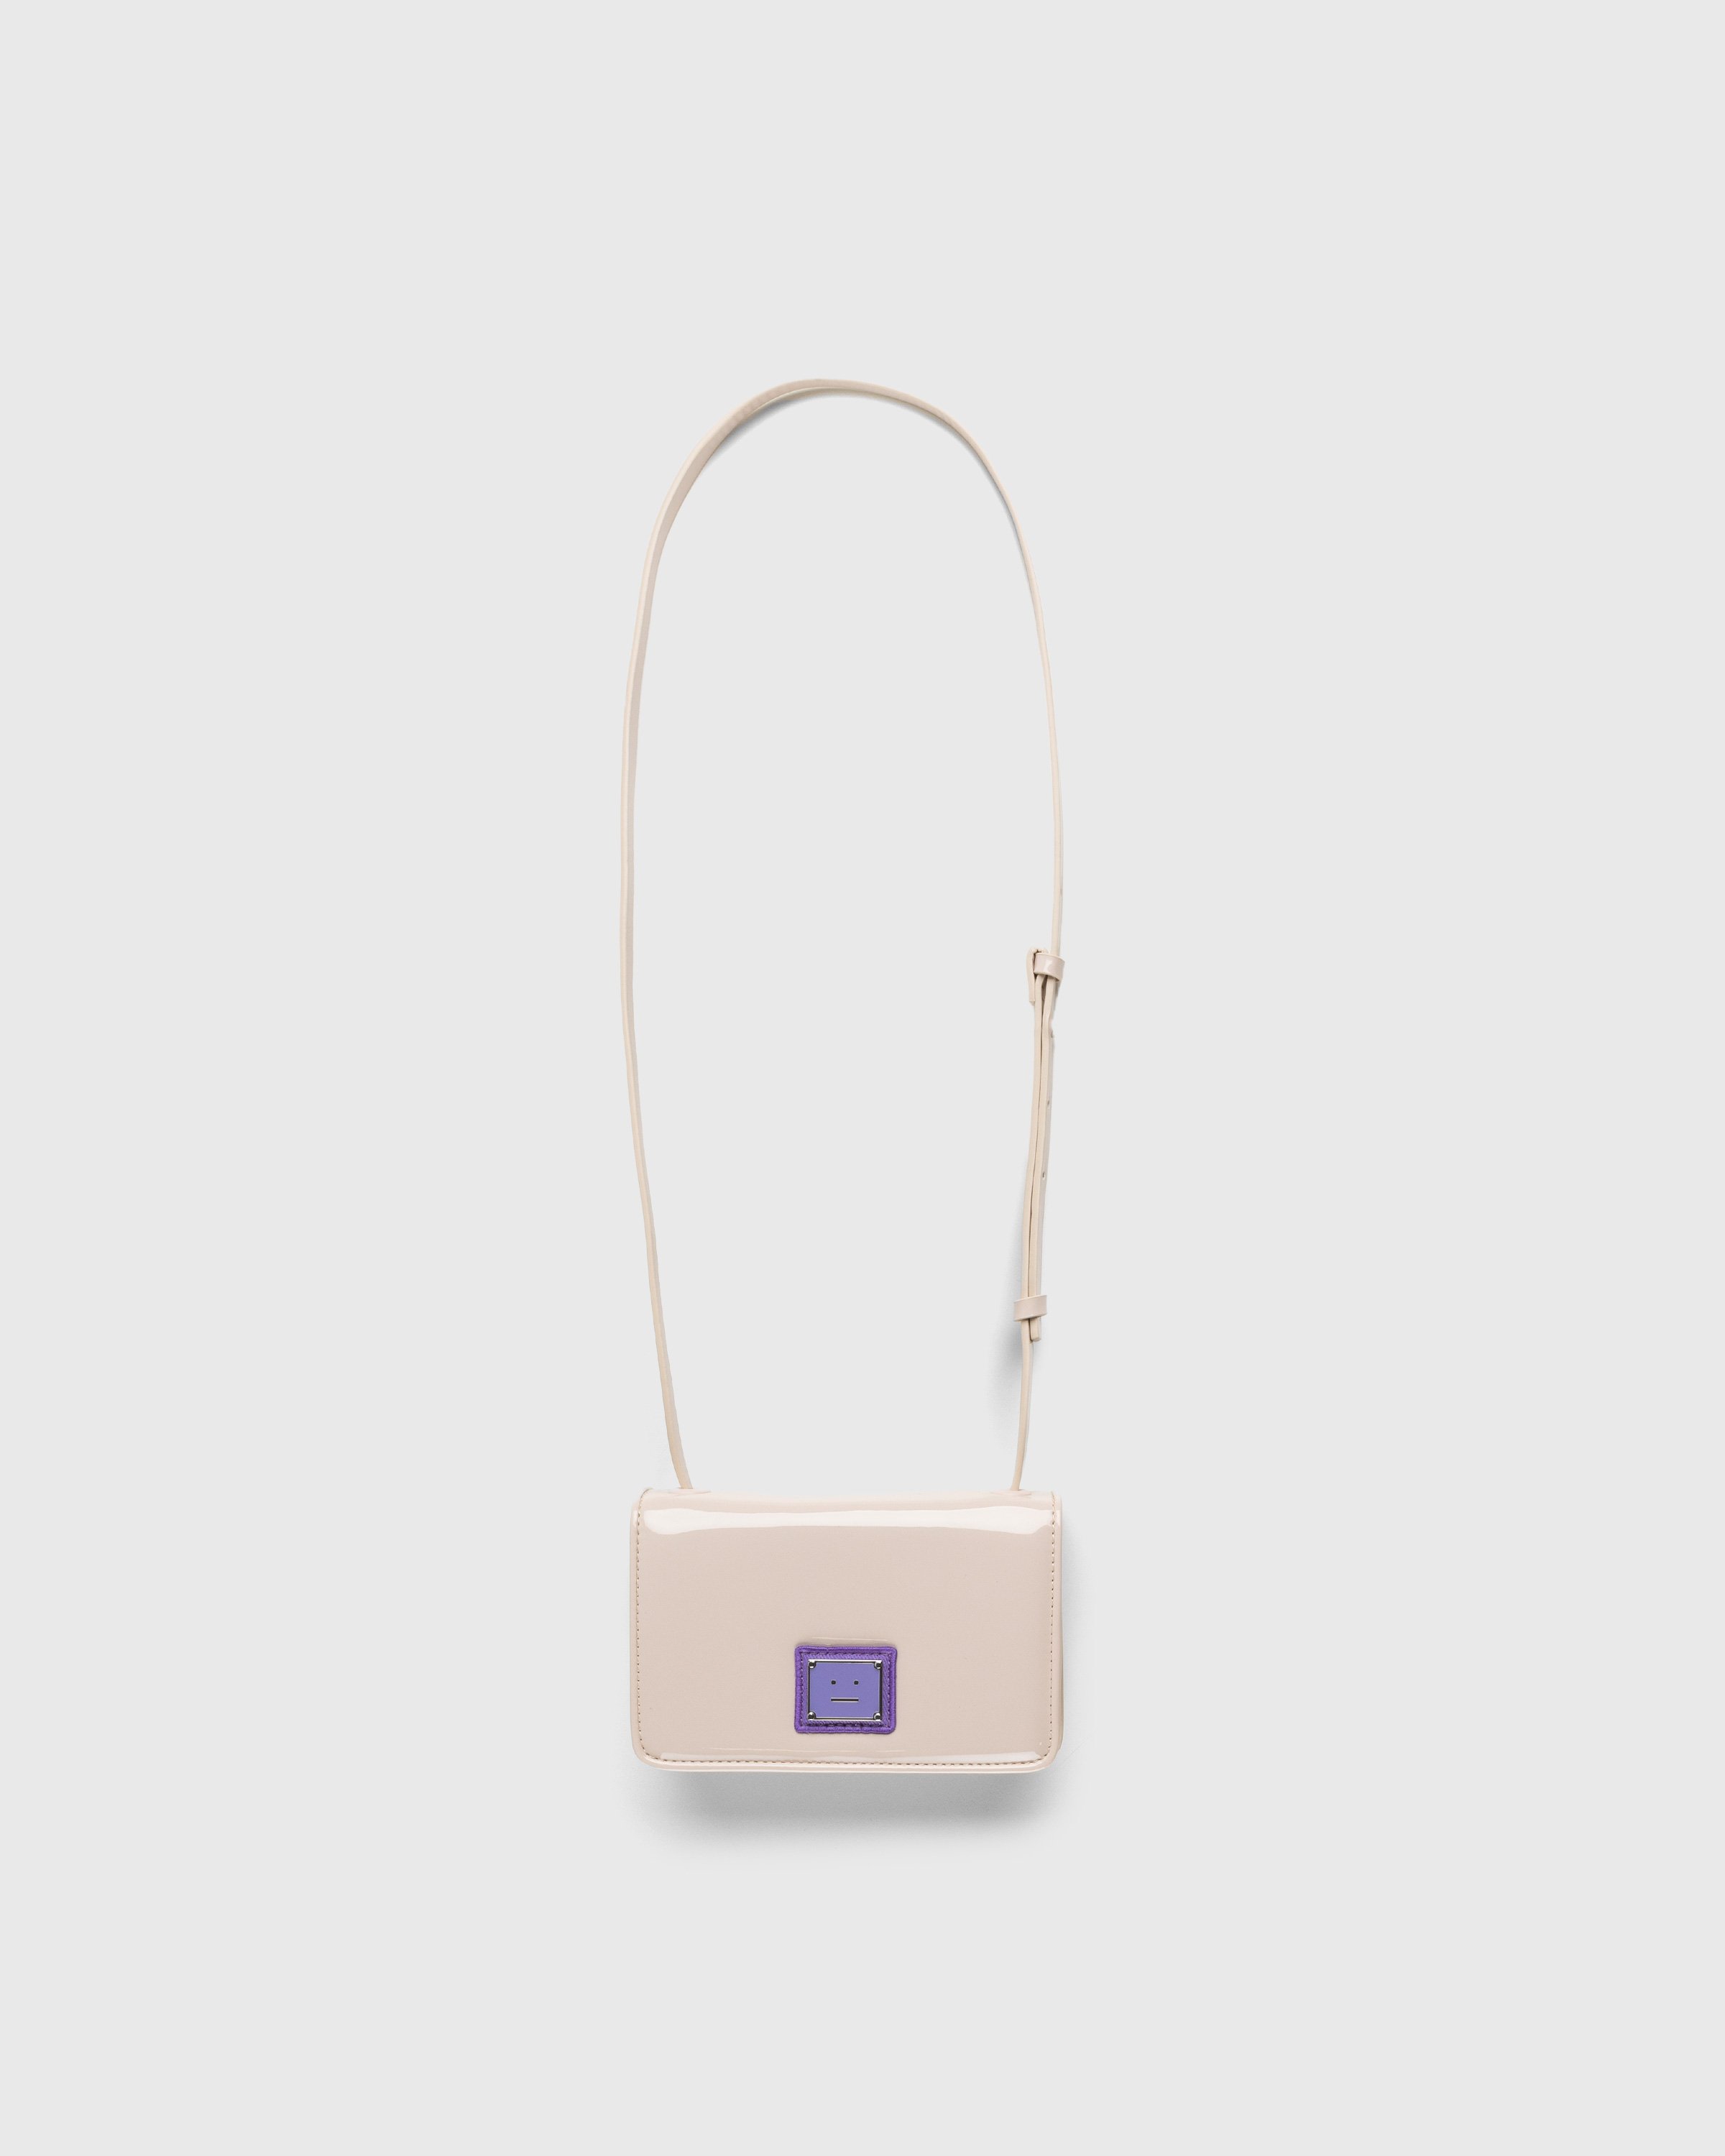 Acne Studios - Mini Crossbody Face Bag Light Beige/Purple - Accessories - Beige - Image 1